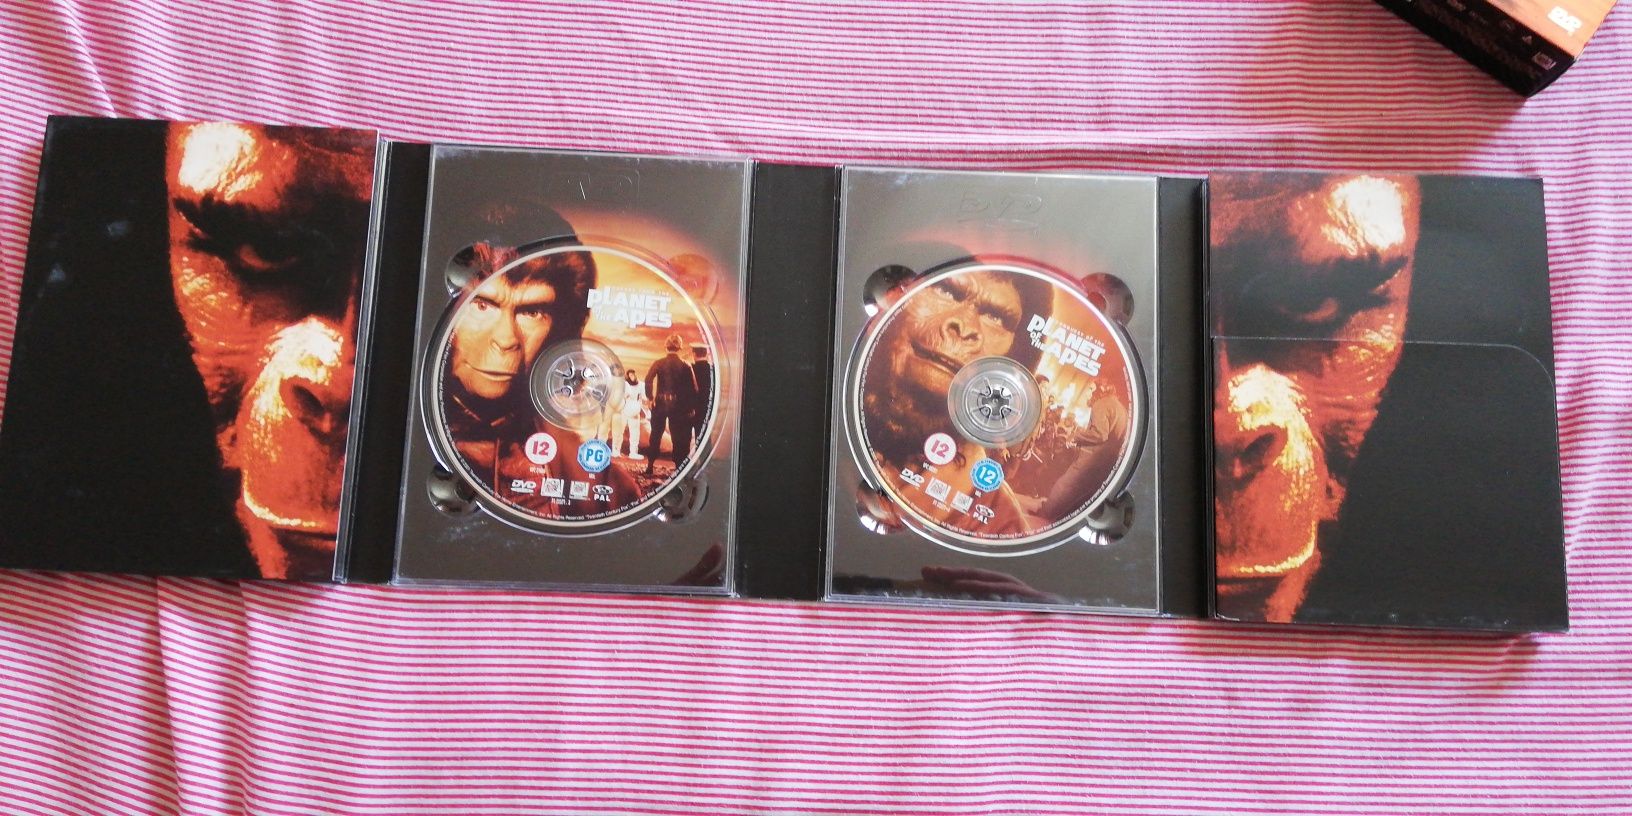 Colecção em dvd "Planeta dos Macacos", Charlton Heston (portes grátis)